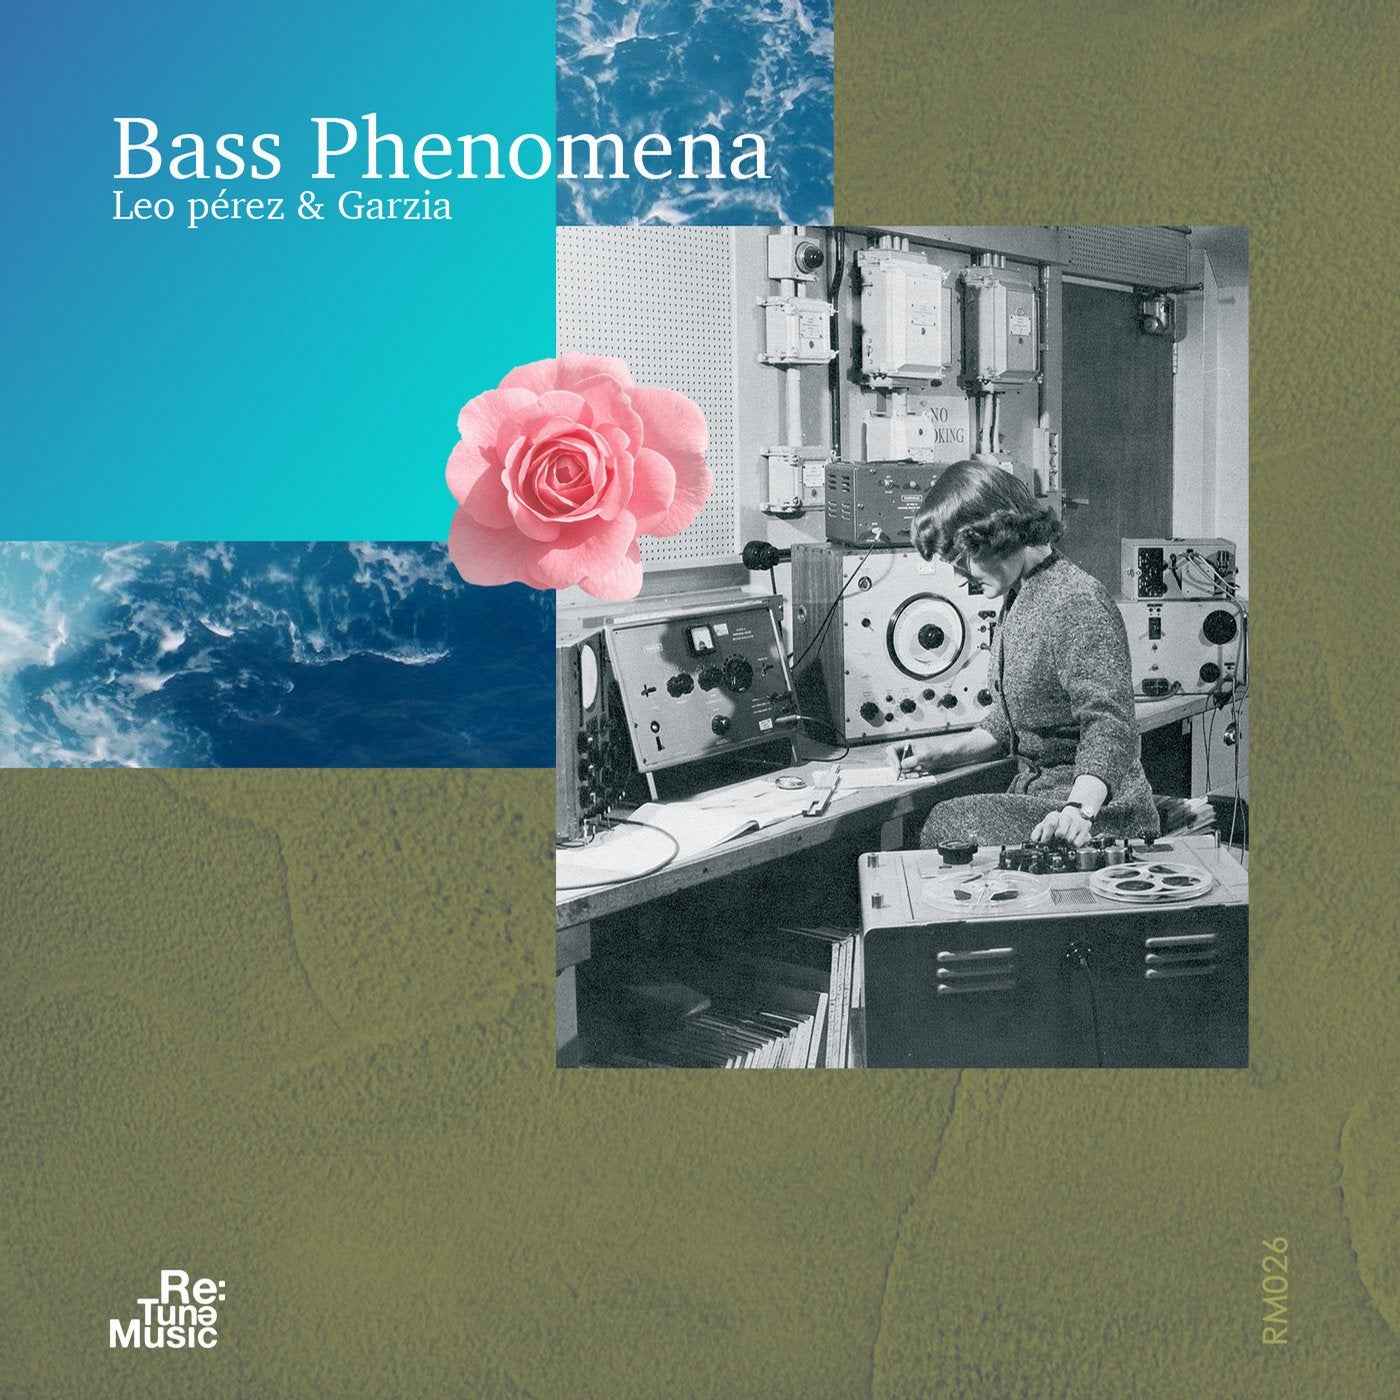 Bass Phenomena